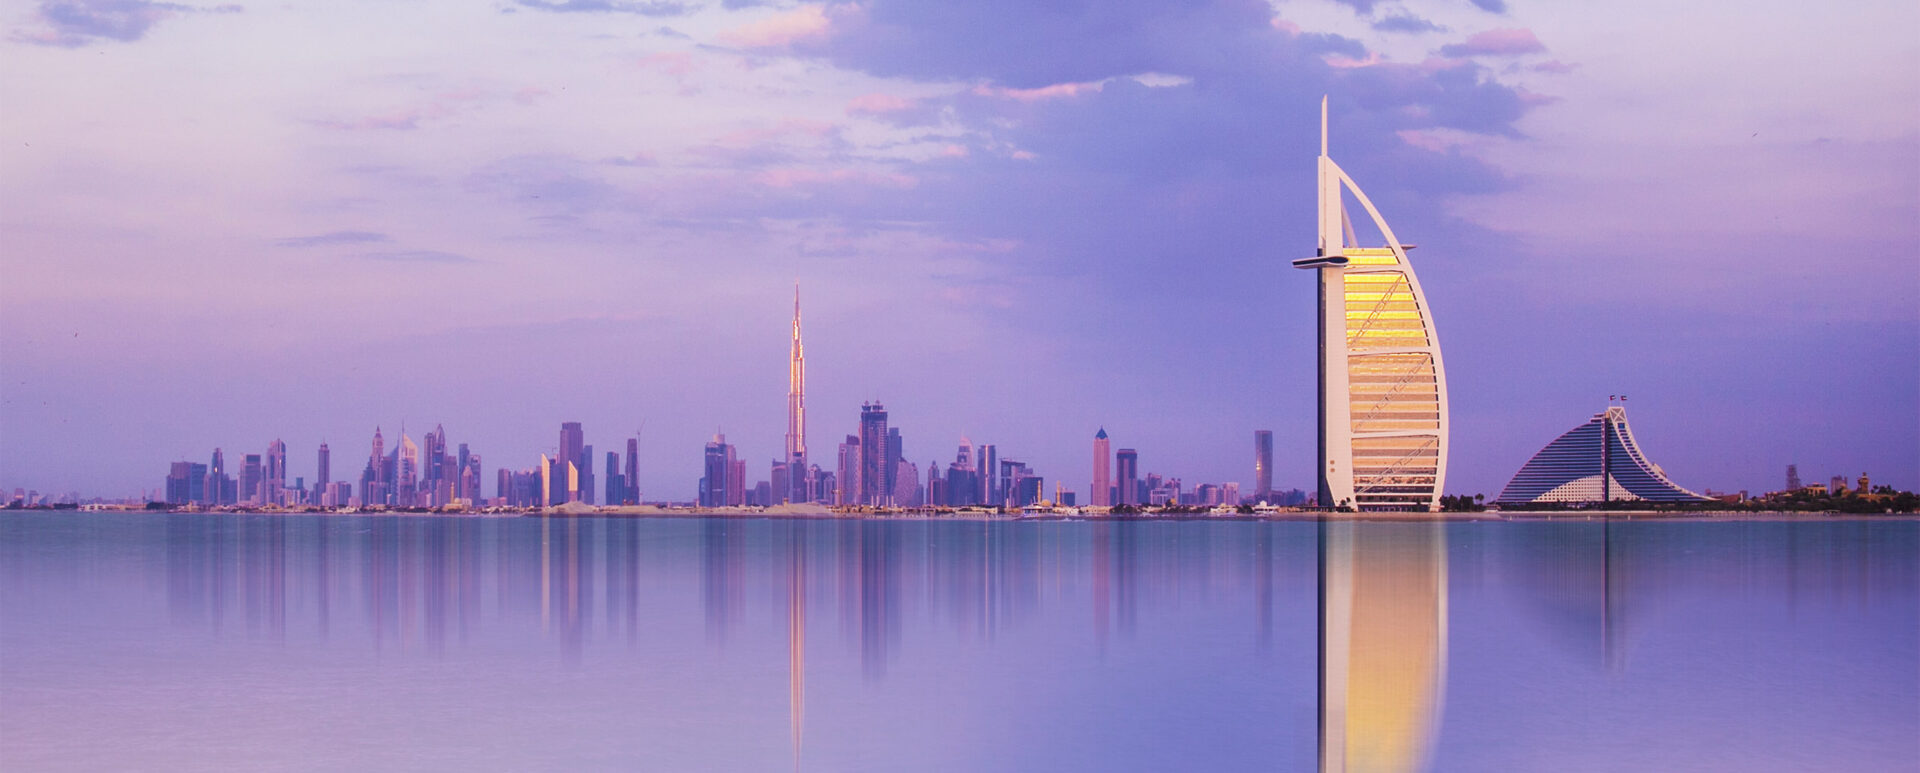 Our insider’s guide to Dubai